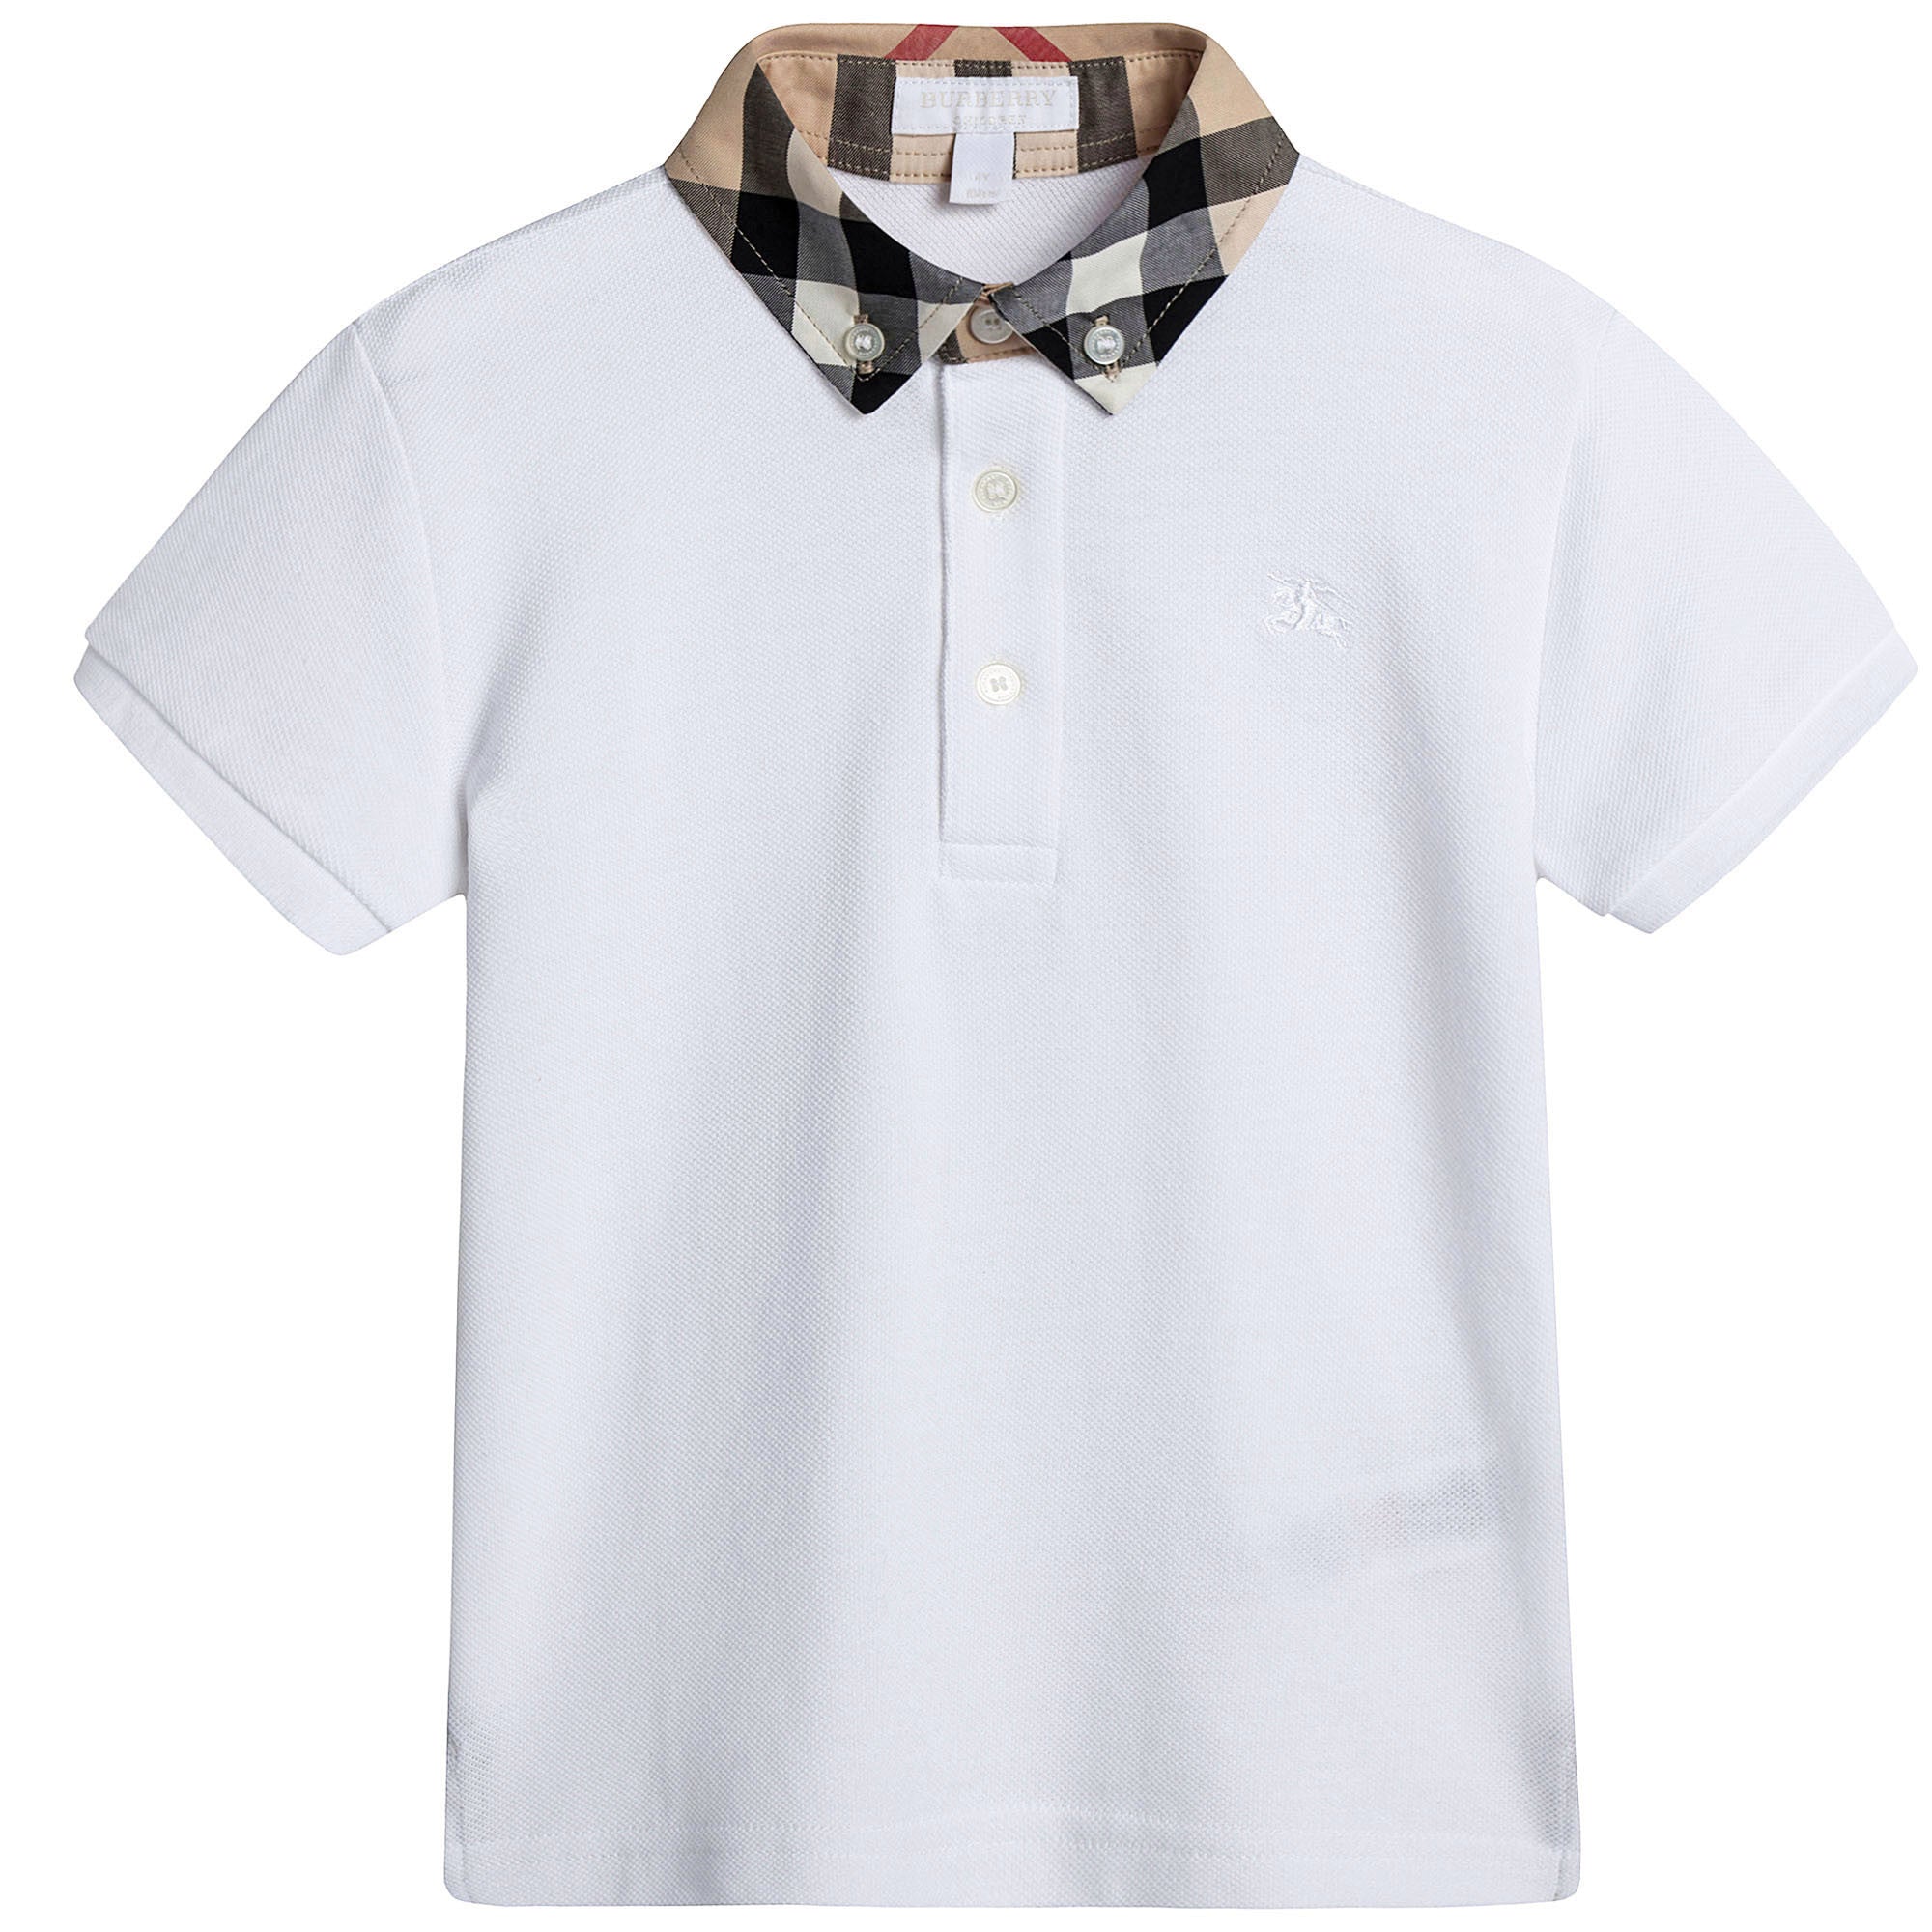 Boys White Cotton Polo Shirt With Check Collar